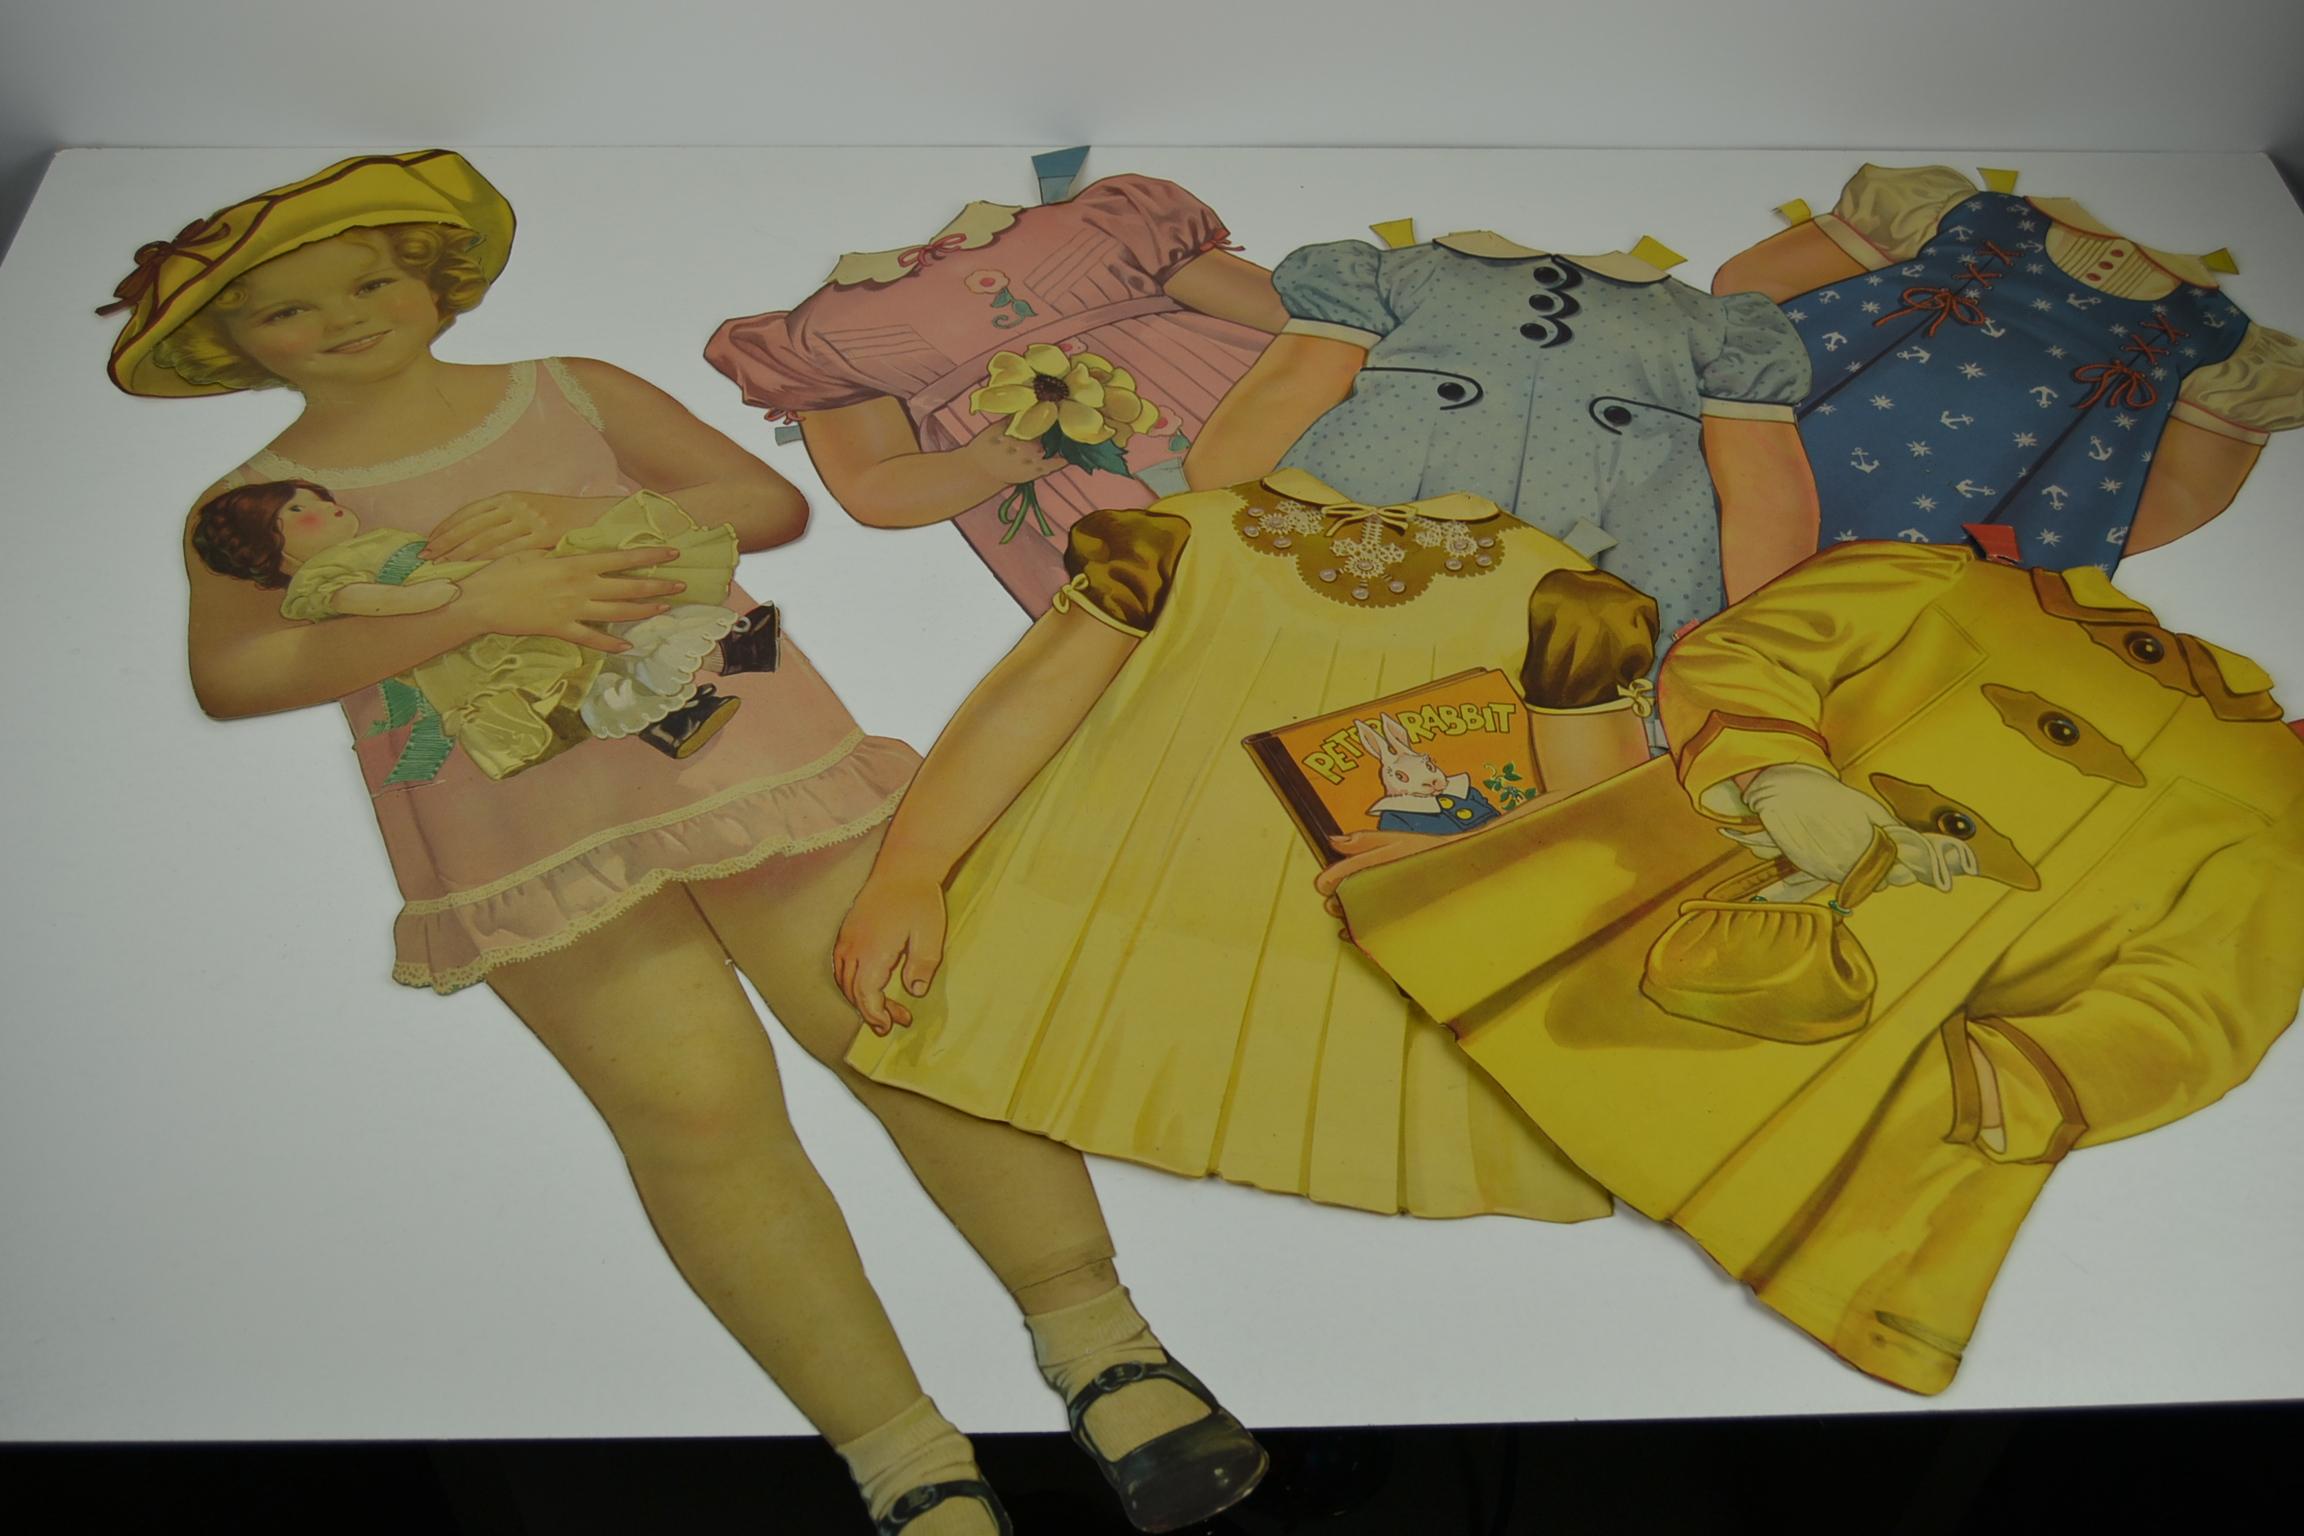 1930er Shirley Temple Papierpuppen-Set - große Größe 34 Zoll - 86 cm.
Shirley Temple trägt ein rosa Kleid, hält eine Puppe im Arm und trägt schwarze Schuhe.
Sie besteht aus 2 Teilen: dem Oberkörper und den Beinen.
Du kannst ihre Kleidung wechseln,